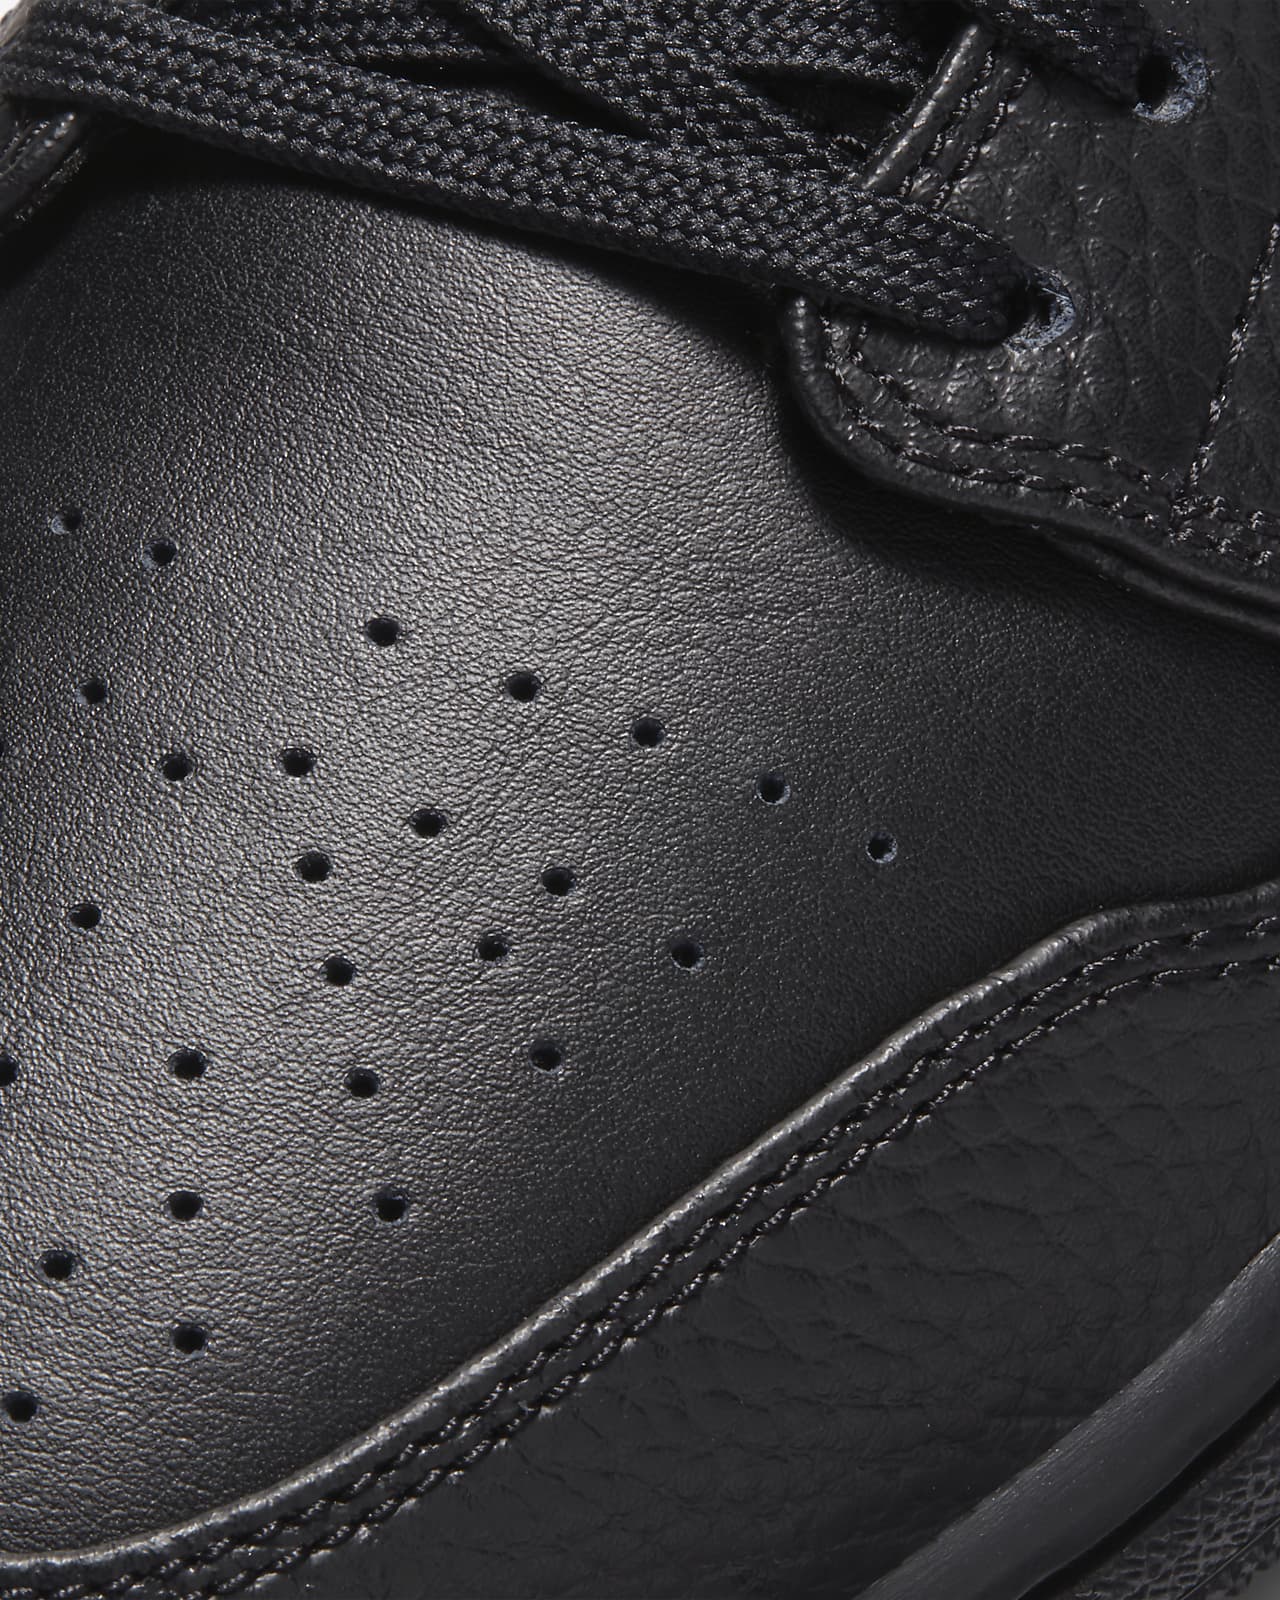 Jordan 1 Zapatillas - Nike ES